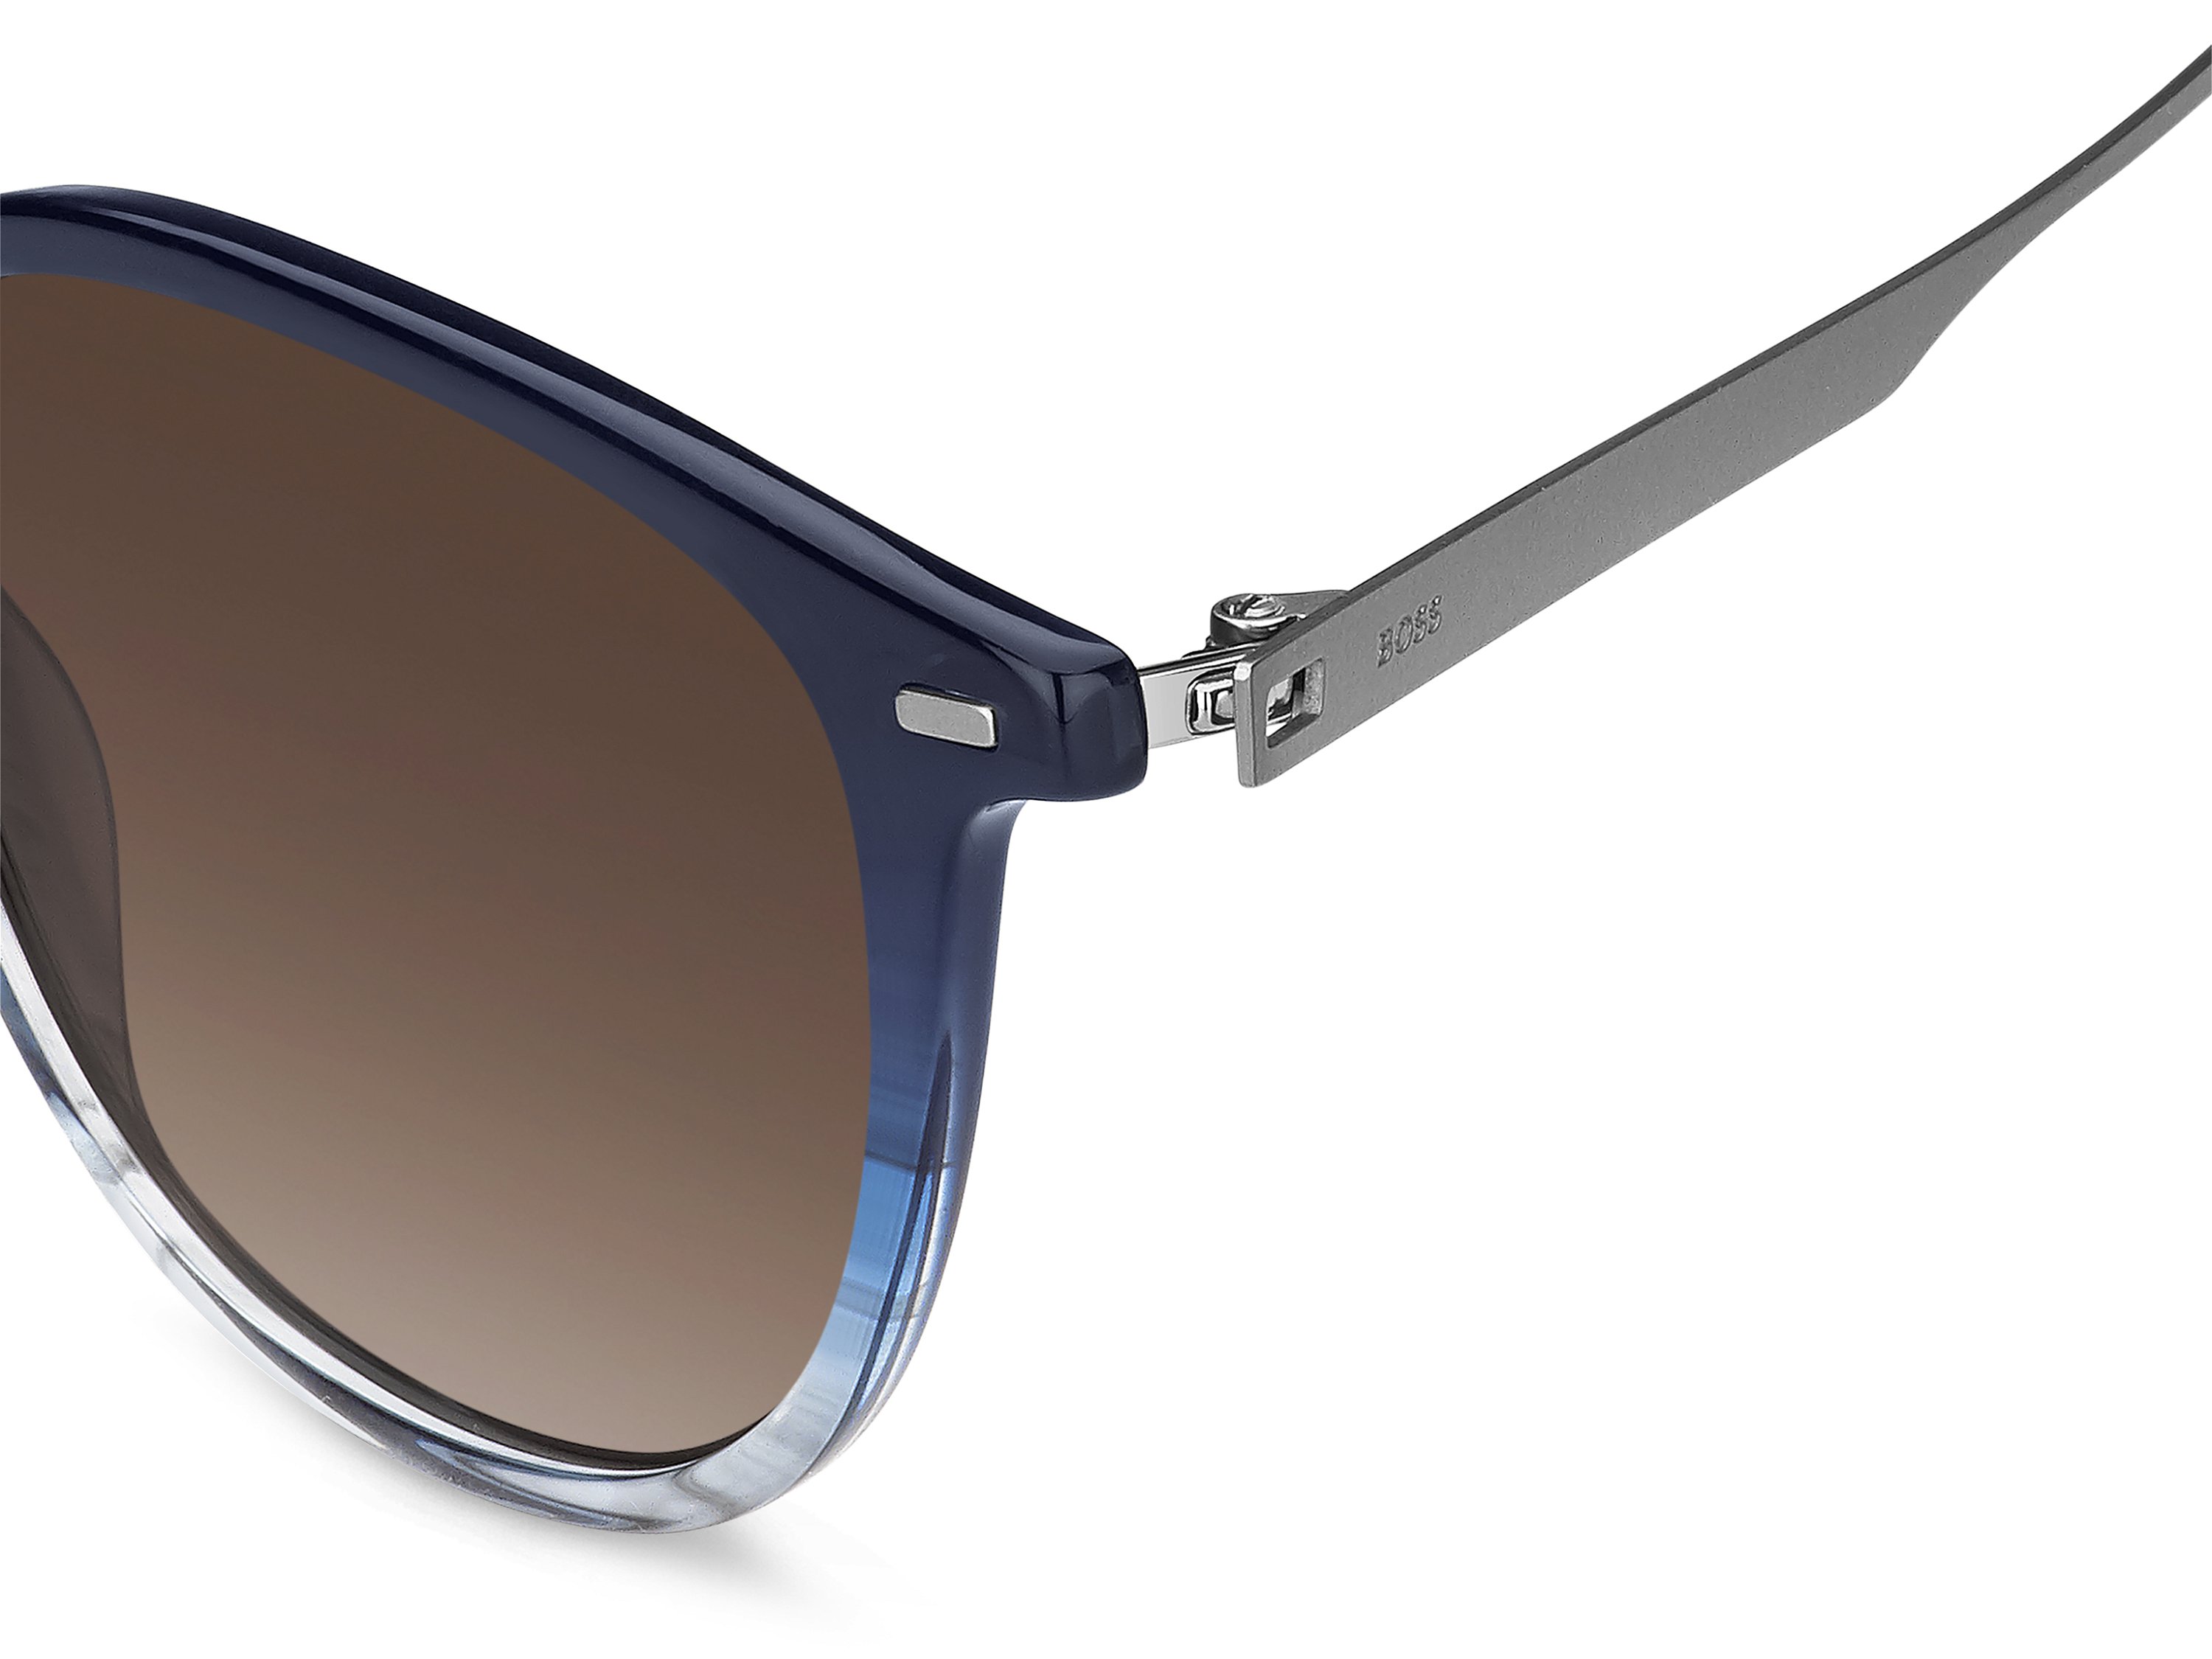 Das Bild zeigt die Sonnenbrille BOSS1639S QEU von der Marke BOSS in Blau.